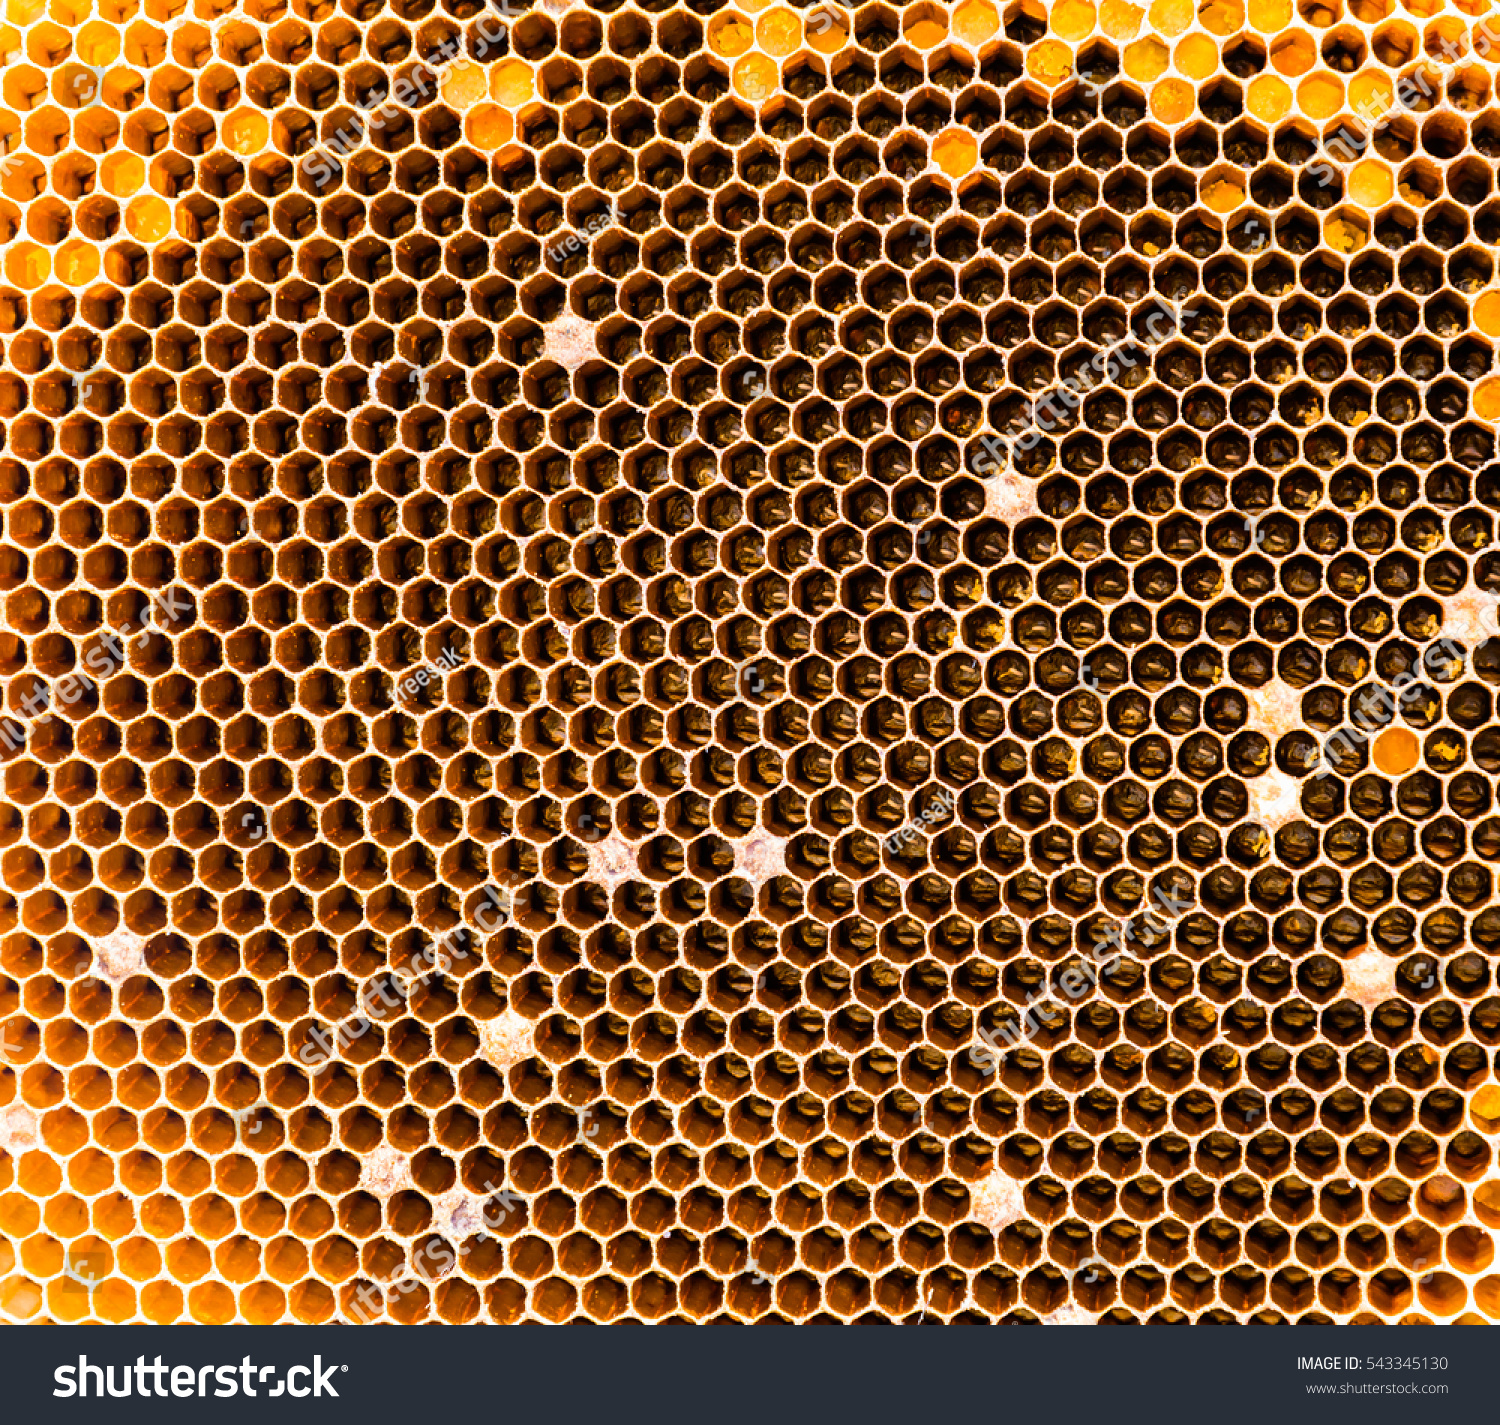 Closeup Image Empty Bee Nest Texture Stock Photo 543345130 ...